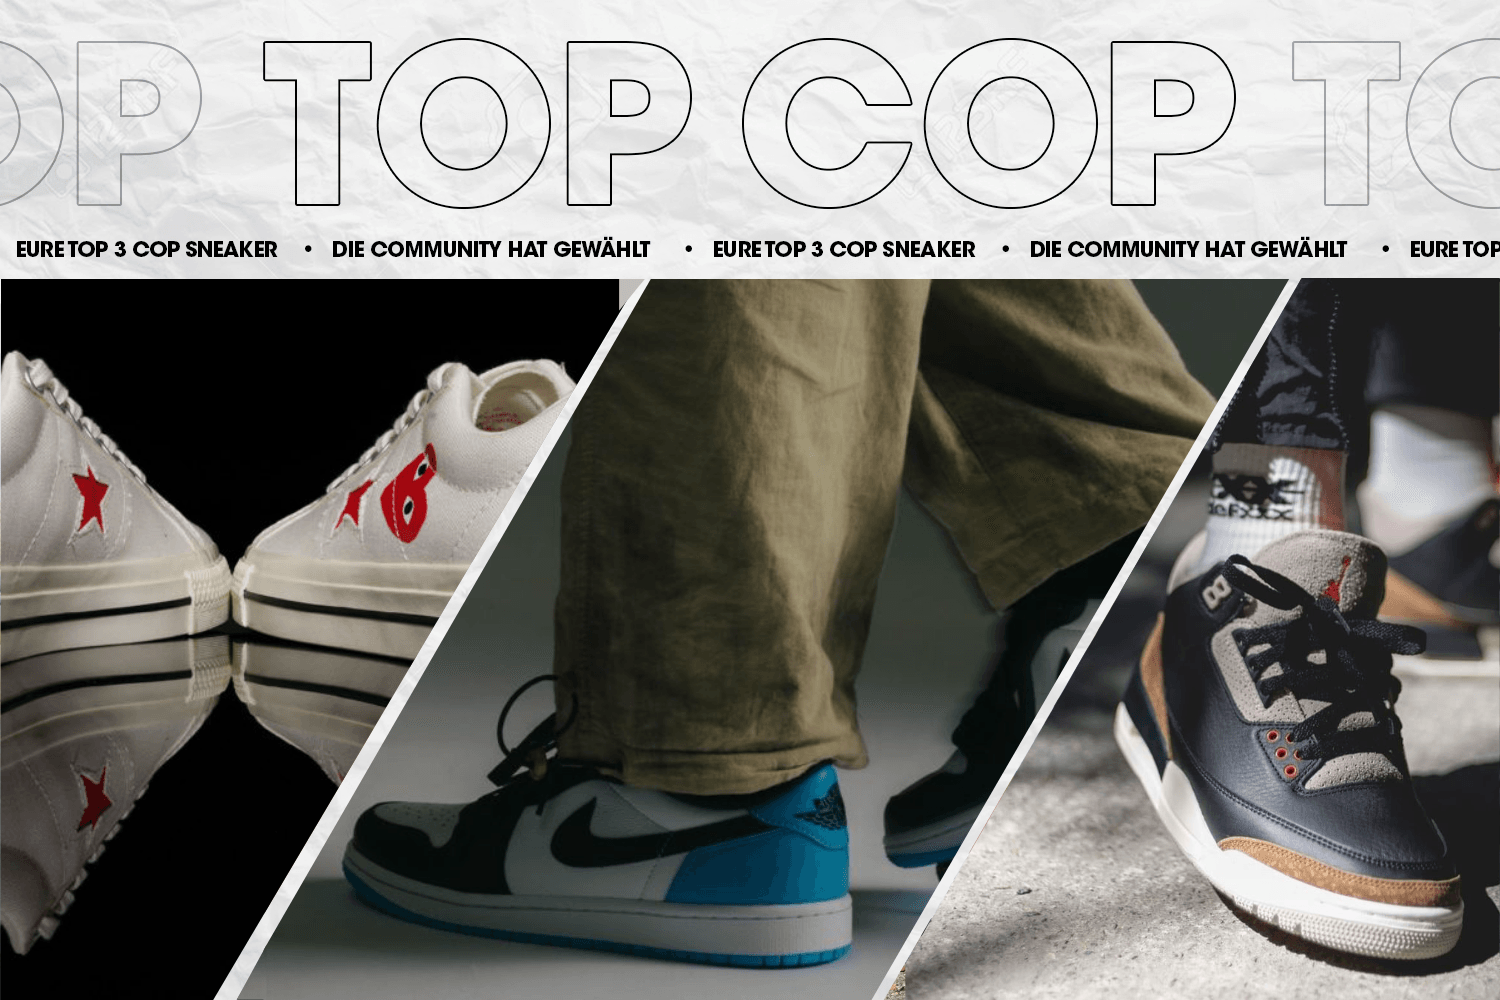 Die Community hat gewählt: Eure Top 3 Cop Sneaker Woche 30